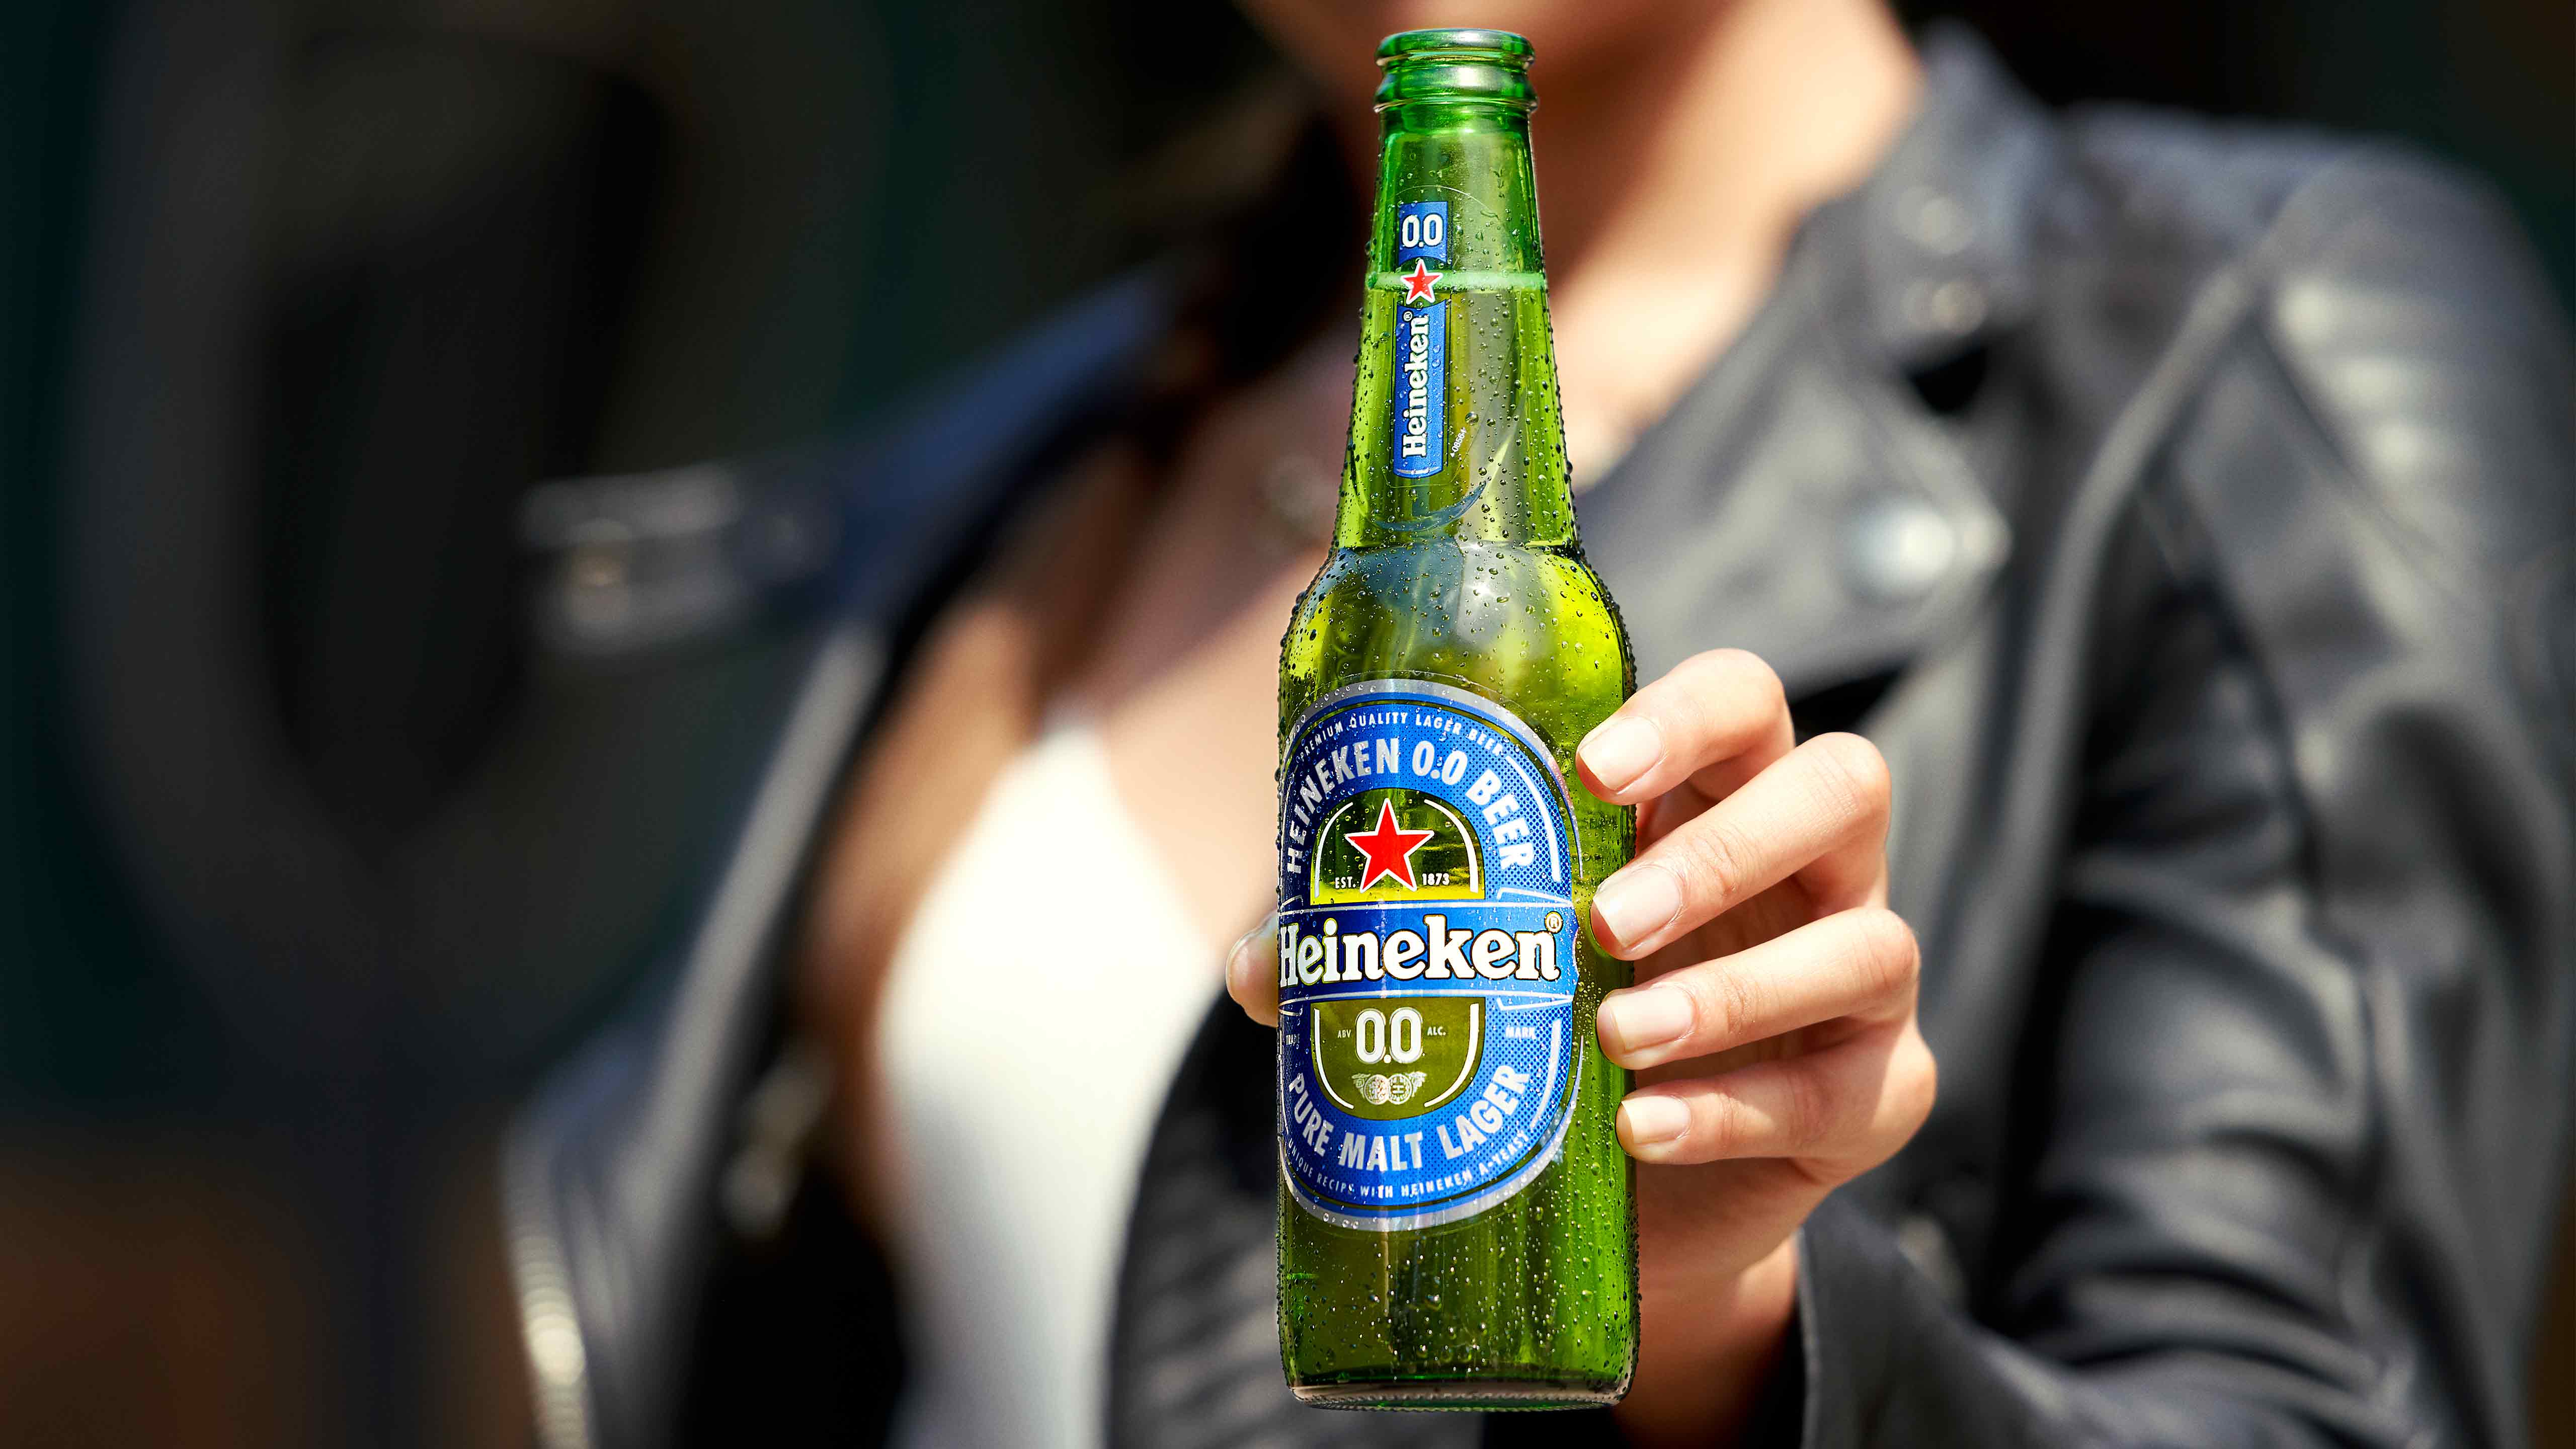 Bia Heineken Hình ảnh Sẵn có  Tải xuống Hình ảnh Ngay bây giờ  Bia   Rượu Bia lager Chai  Thùng đựng hàng  iStock